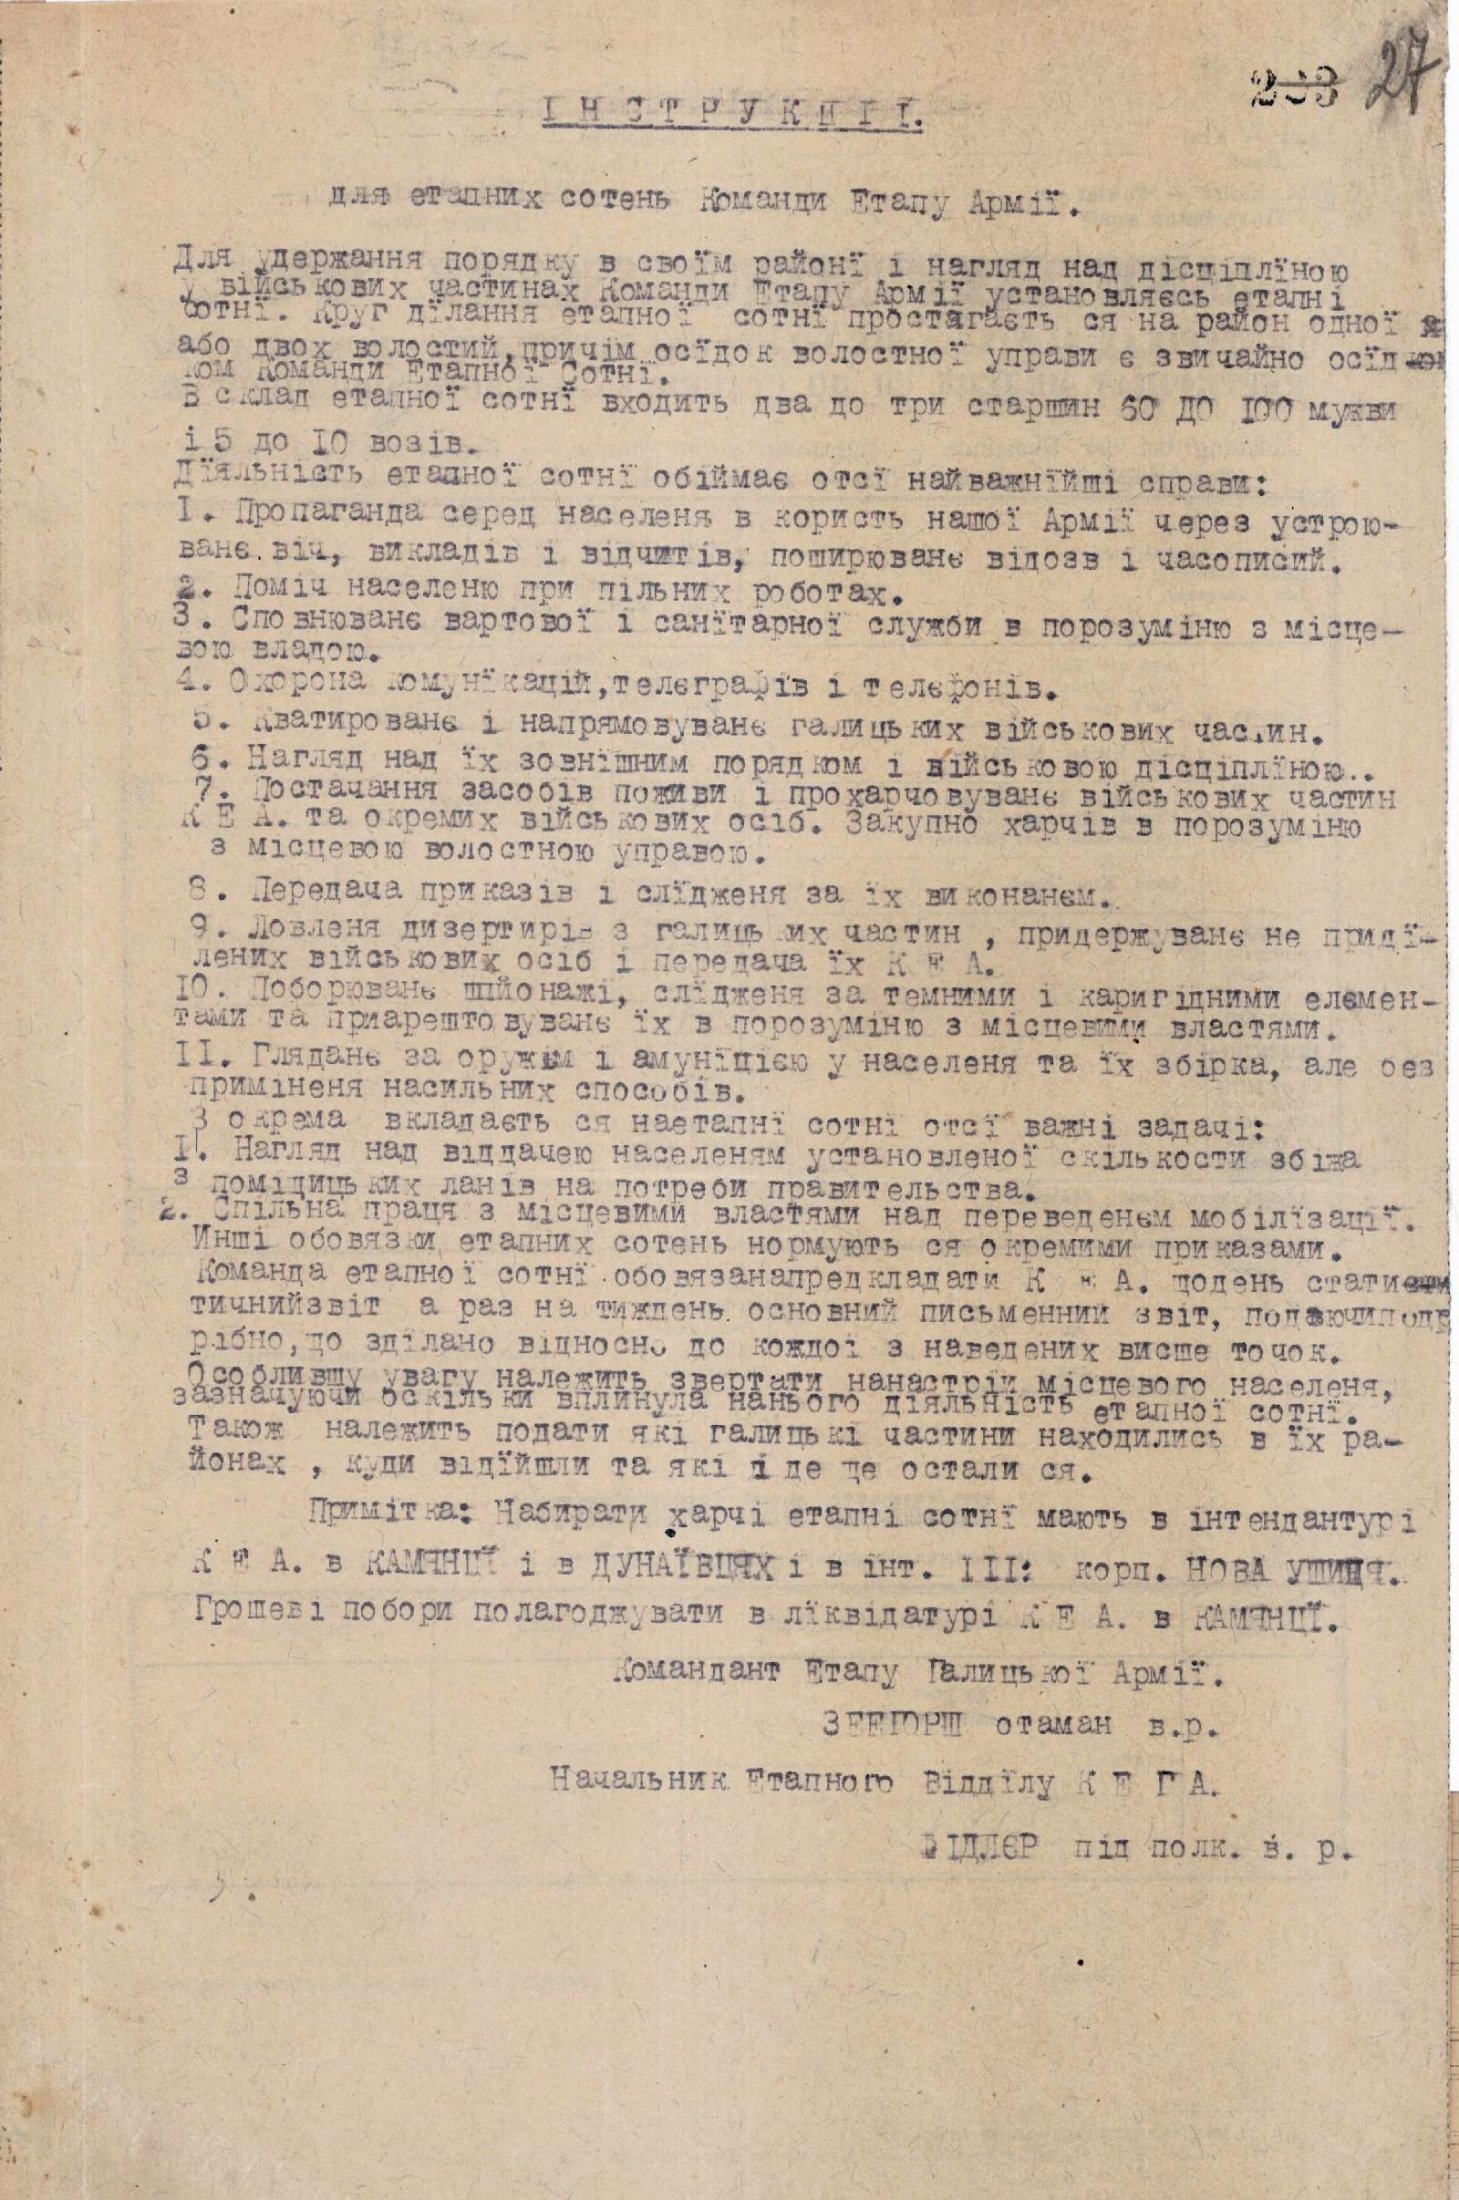 Інструкція для етапних сотень Команди Етапу Армії. 4 серпня 1919 р.